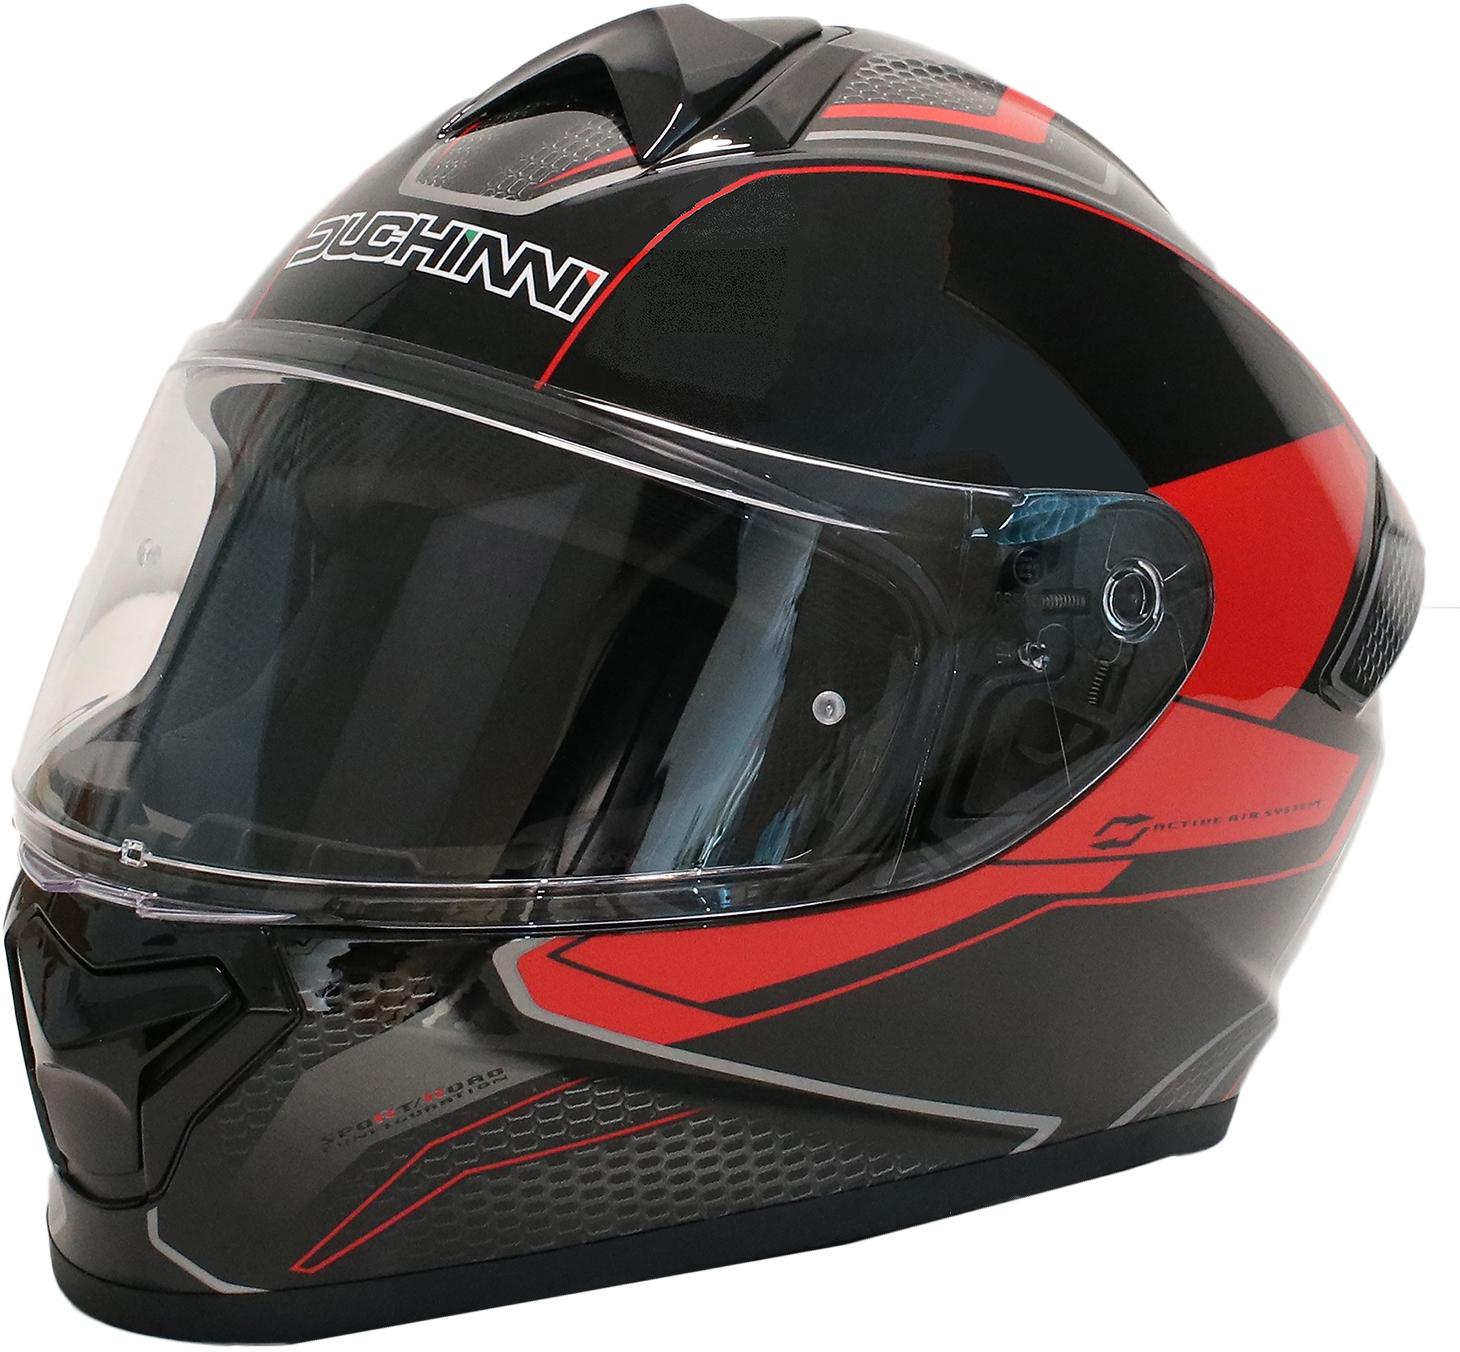 Duchinni Black/Red Helmet D977 S